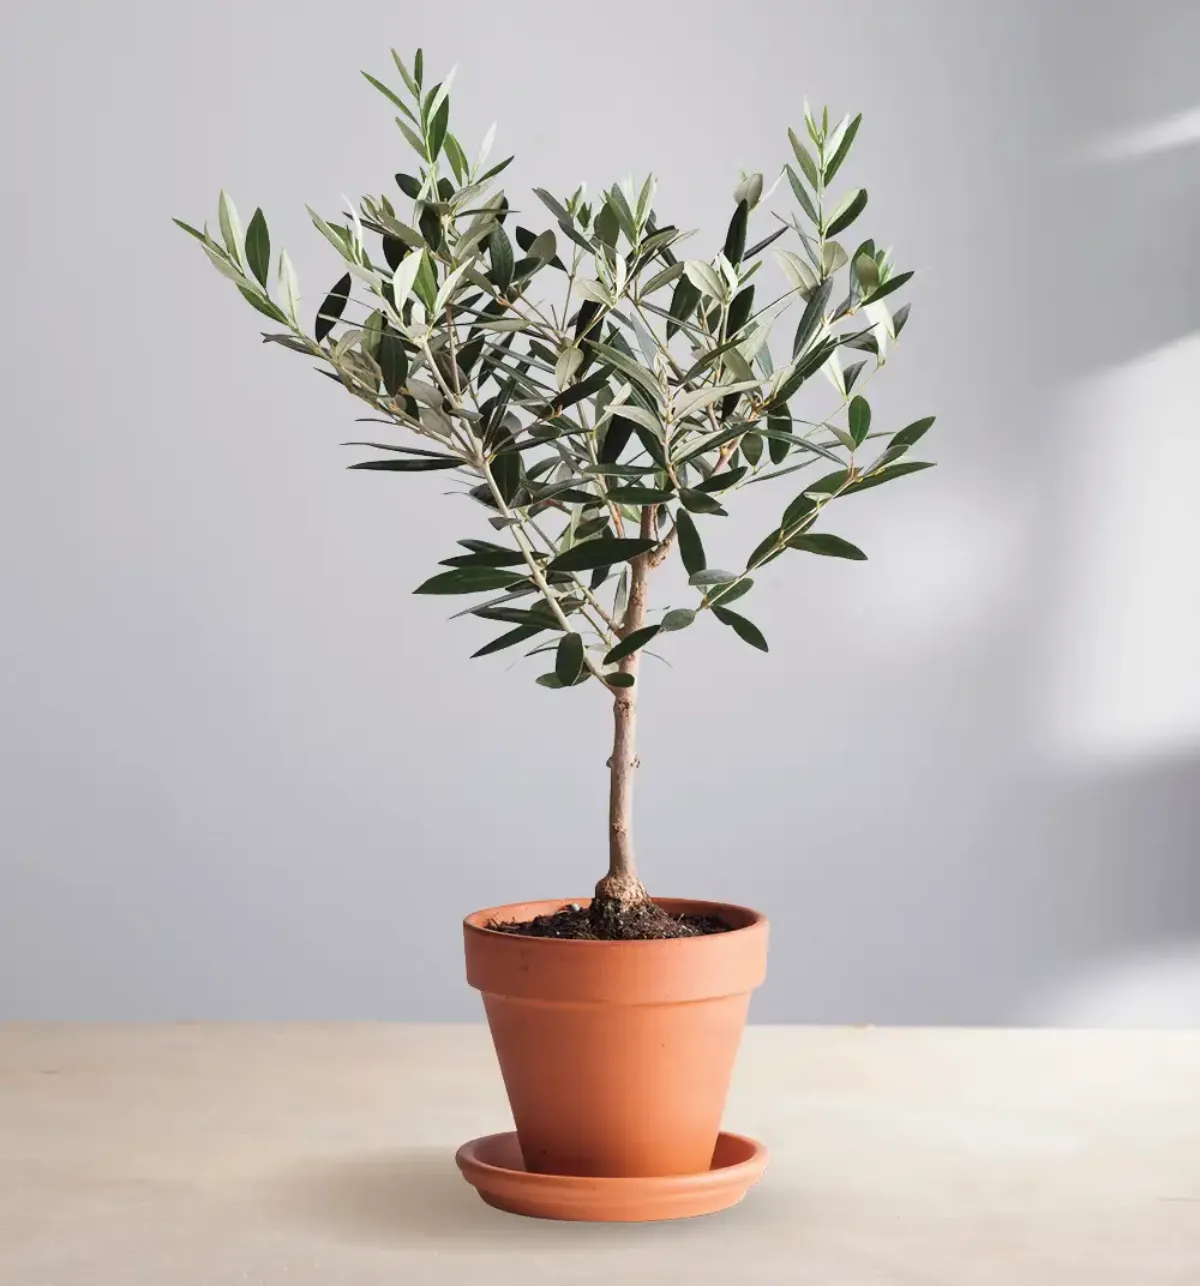 olivenbaum im winter pflegen welche schwierigkeiten bei überwinterung